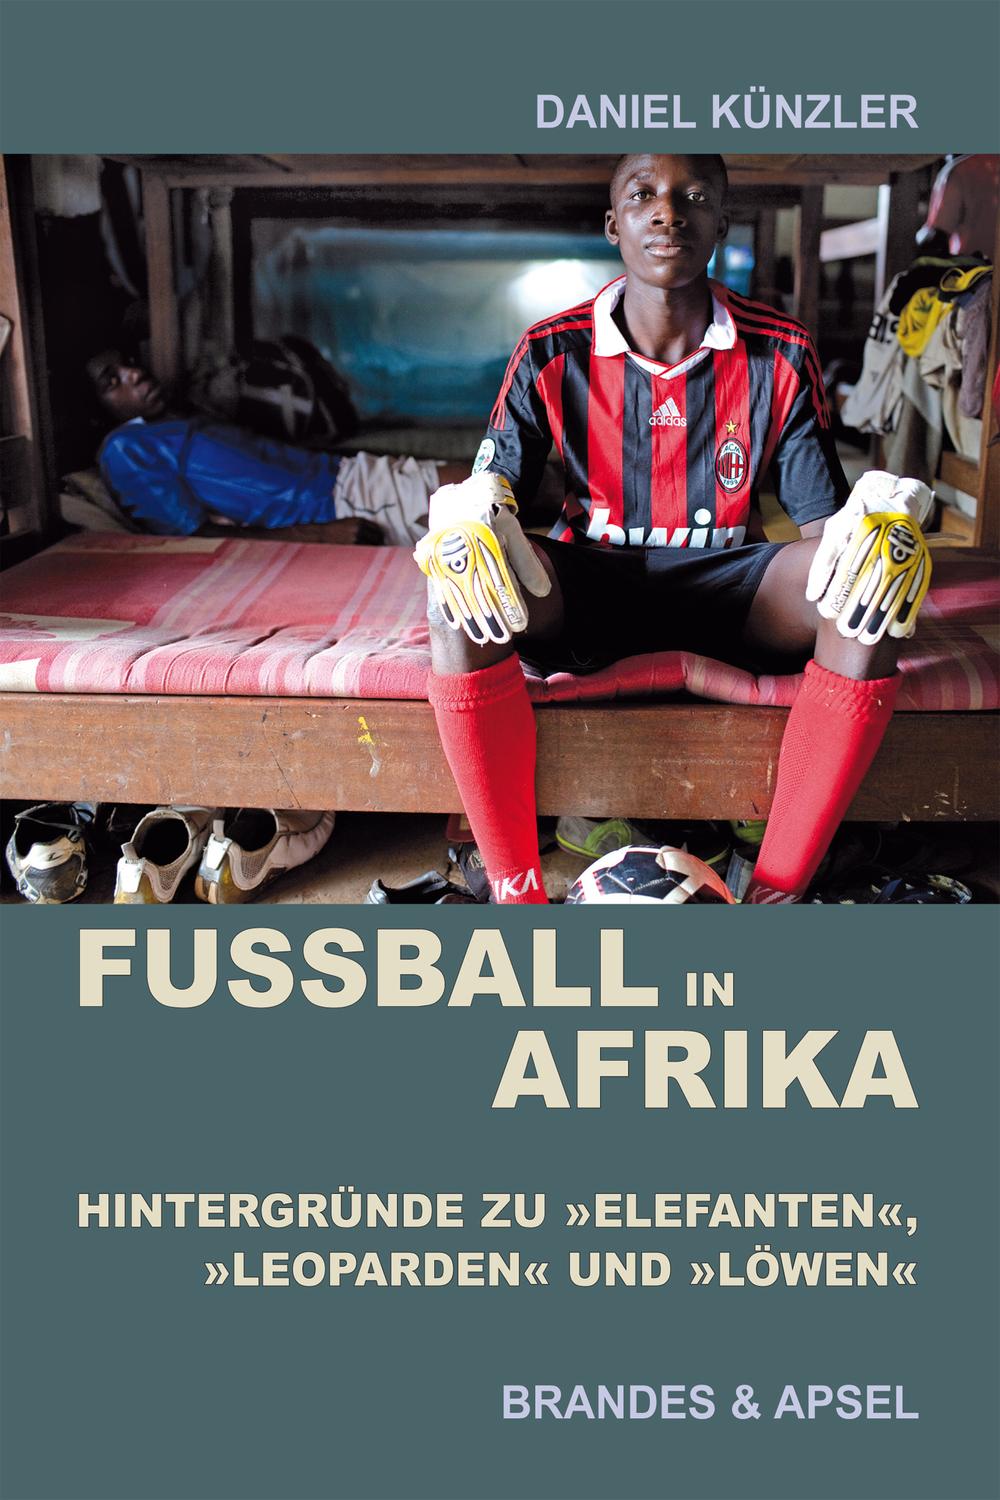 Fußball in Afrika - Daniel Künzler